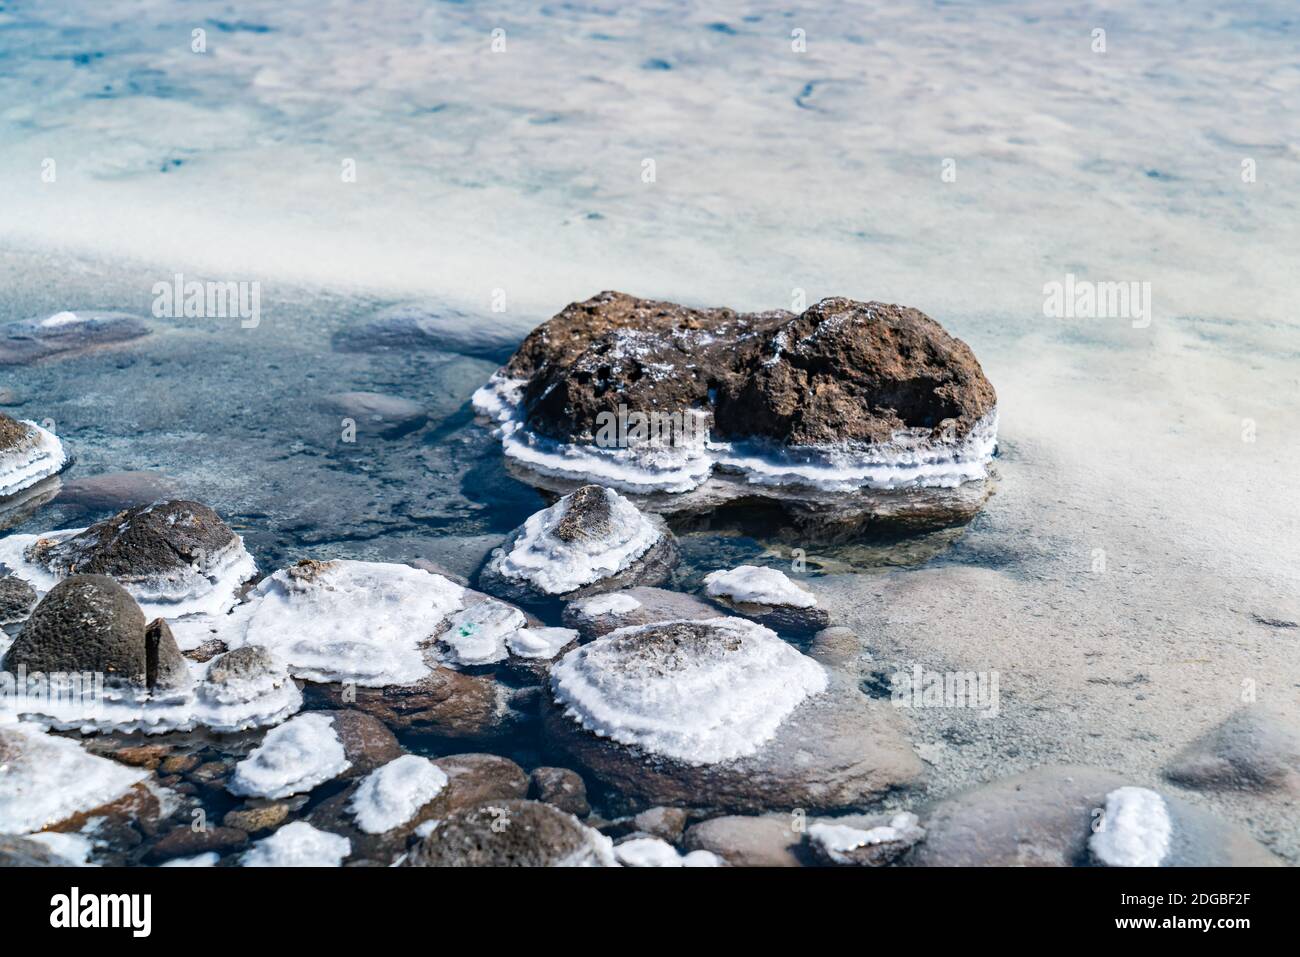 Précipitation de sel sur les roches volcaniques de Salar de Uyuni, le plus grand plat de sel au monde Banque D'Images